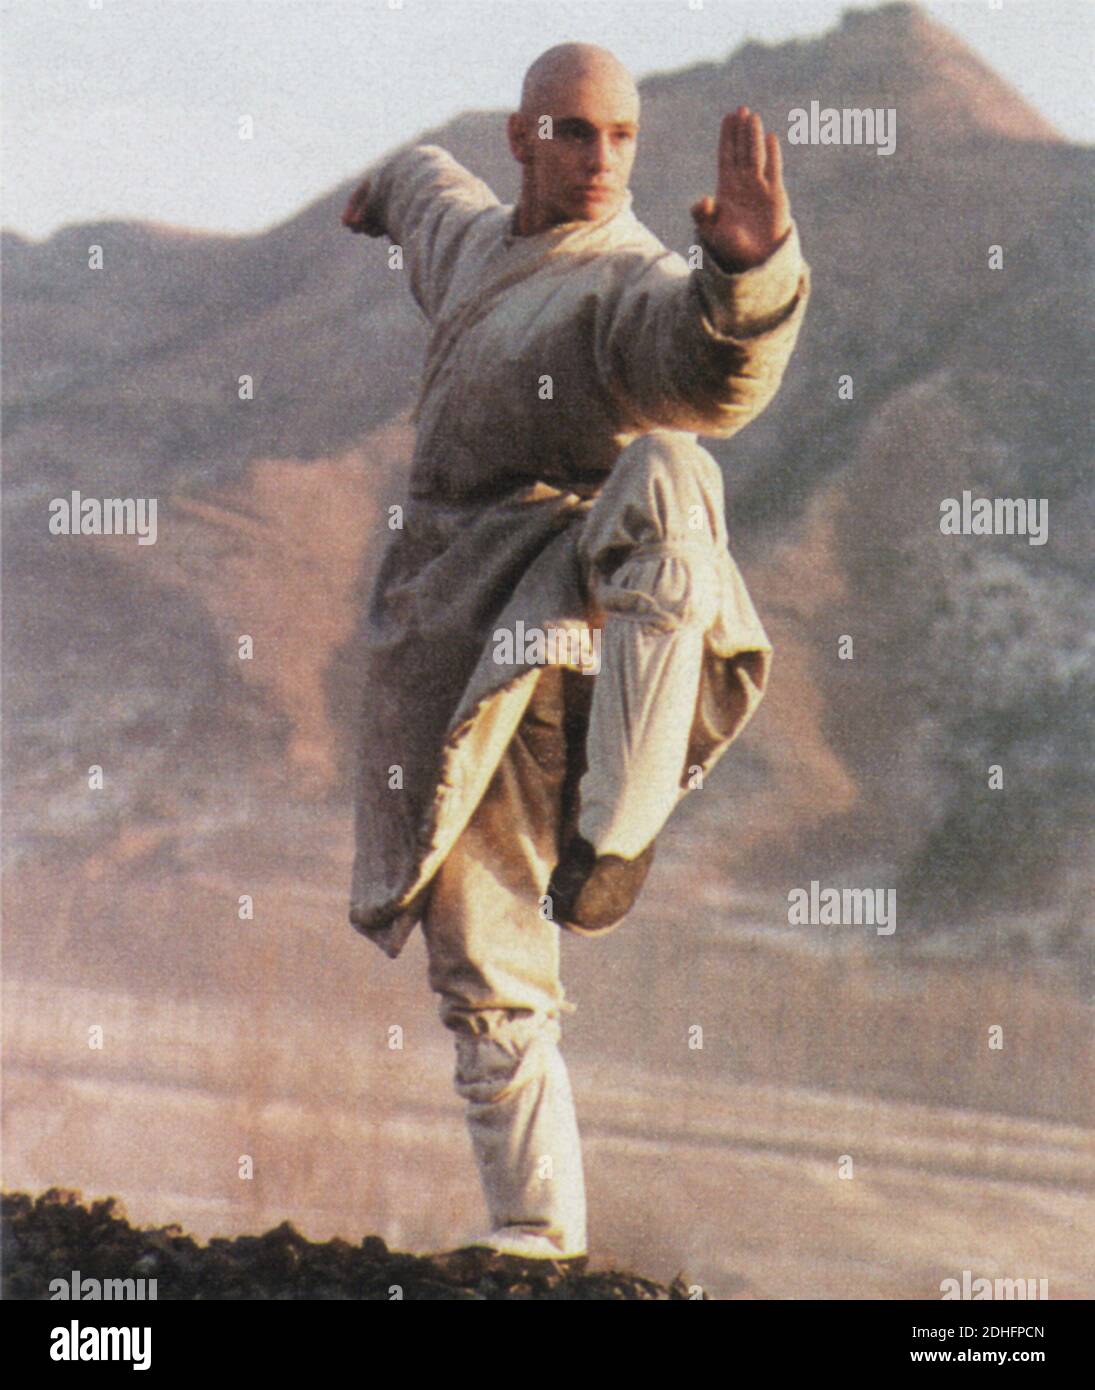 1994 , ITALIA : l'attore cinematografico e televisivo italiano GIORGIO PASOTTI (Bergamo, 22 giugno 1973) Quando è stato nel cast di Cina azione film arti marziali ' Treasure Hunt ' - ATTORE - CINEMA - FILM - TELEVISIONE - personalità quando era giovane - celebrità - celebrità - personalità celebrità da giovani - giovane - karate - arti marziali - WU SHU ---- Archivio GBB Foto Stock